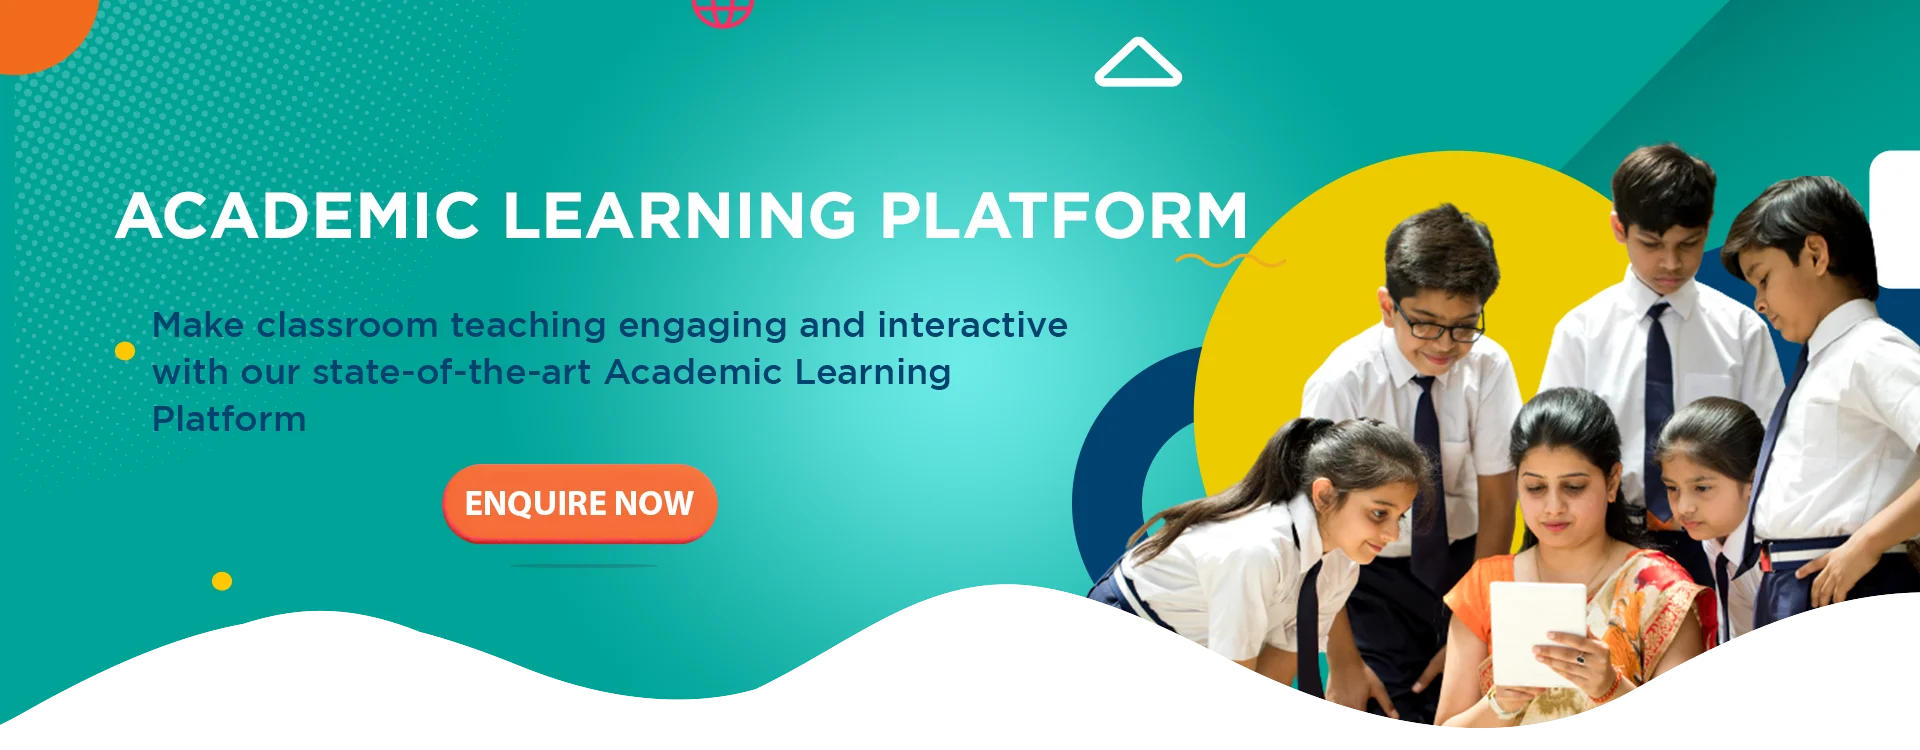 Academic learnig platform banner